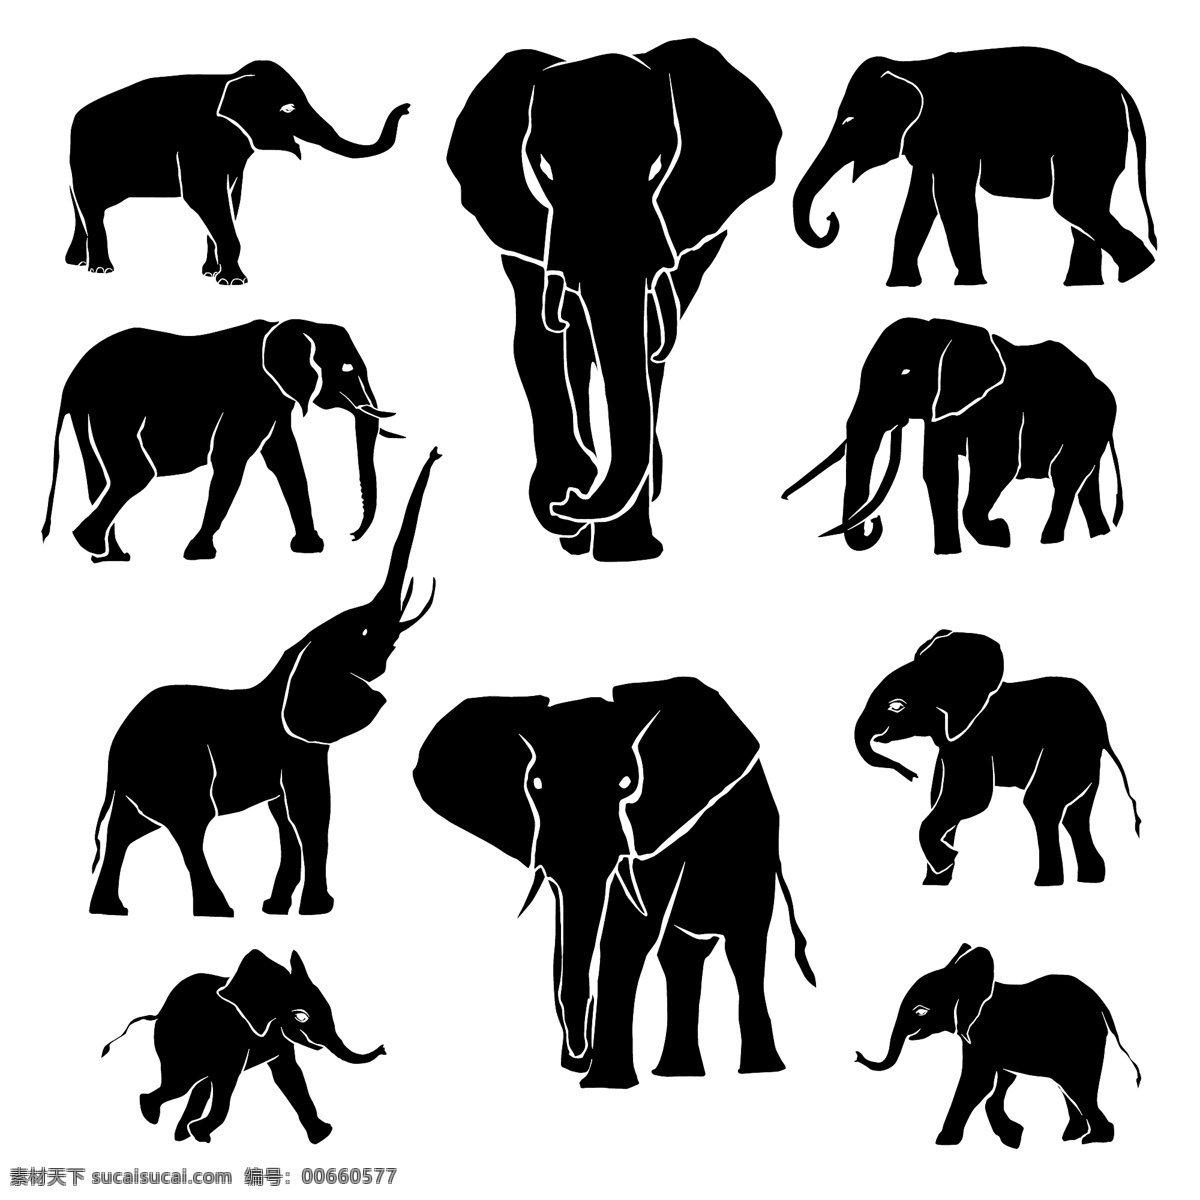 大象剪影 动物剪影 动物世界 卡通动物 漫画动物 陆地动物 生物世界